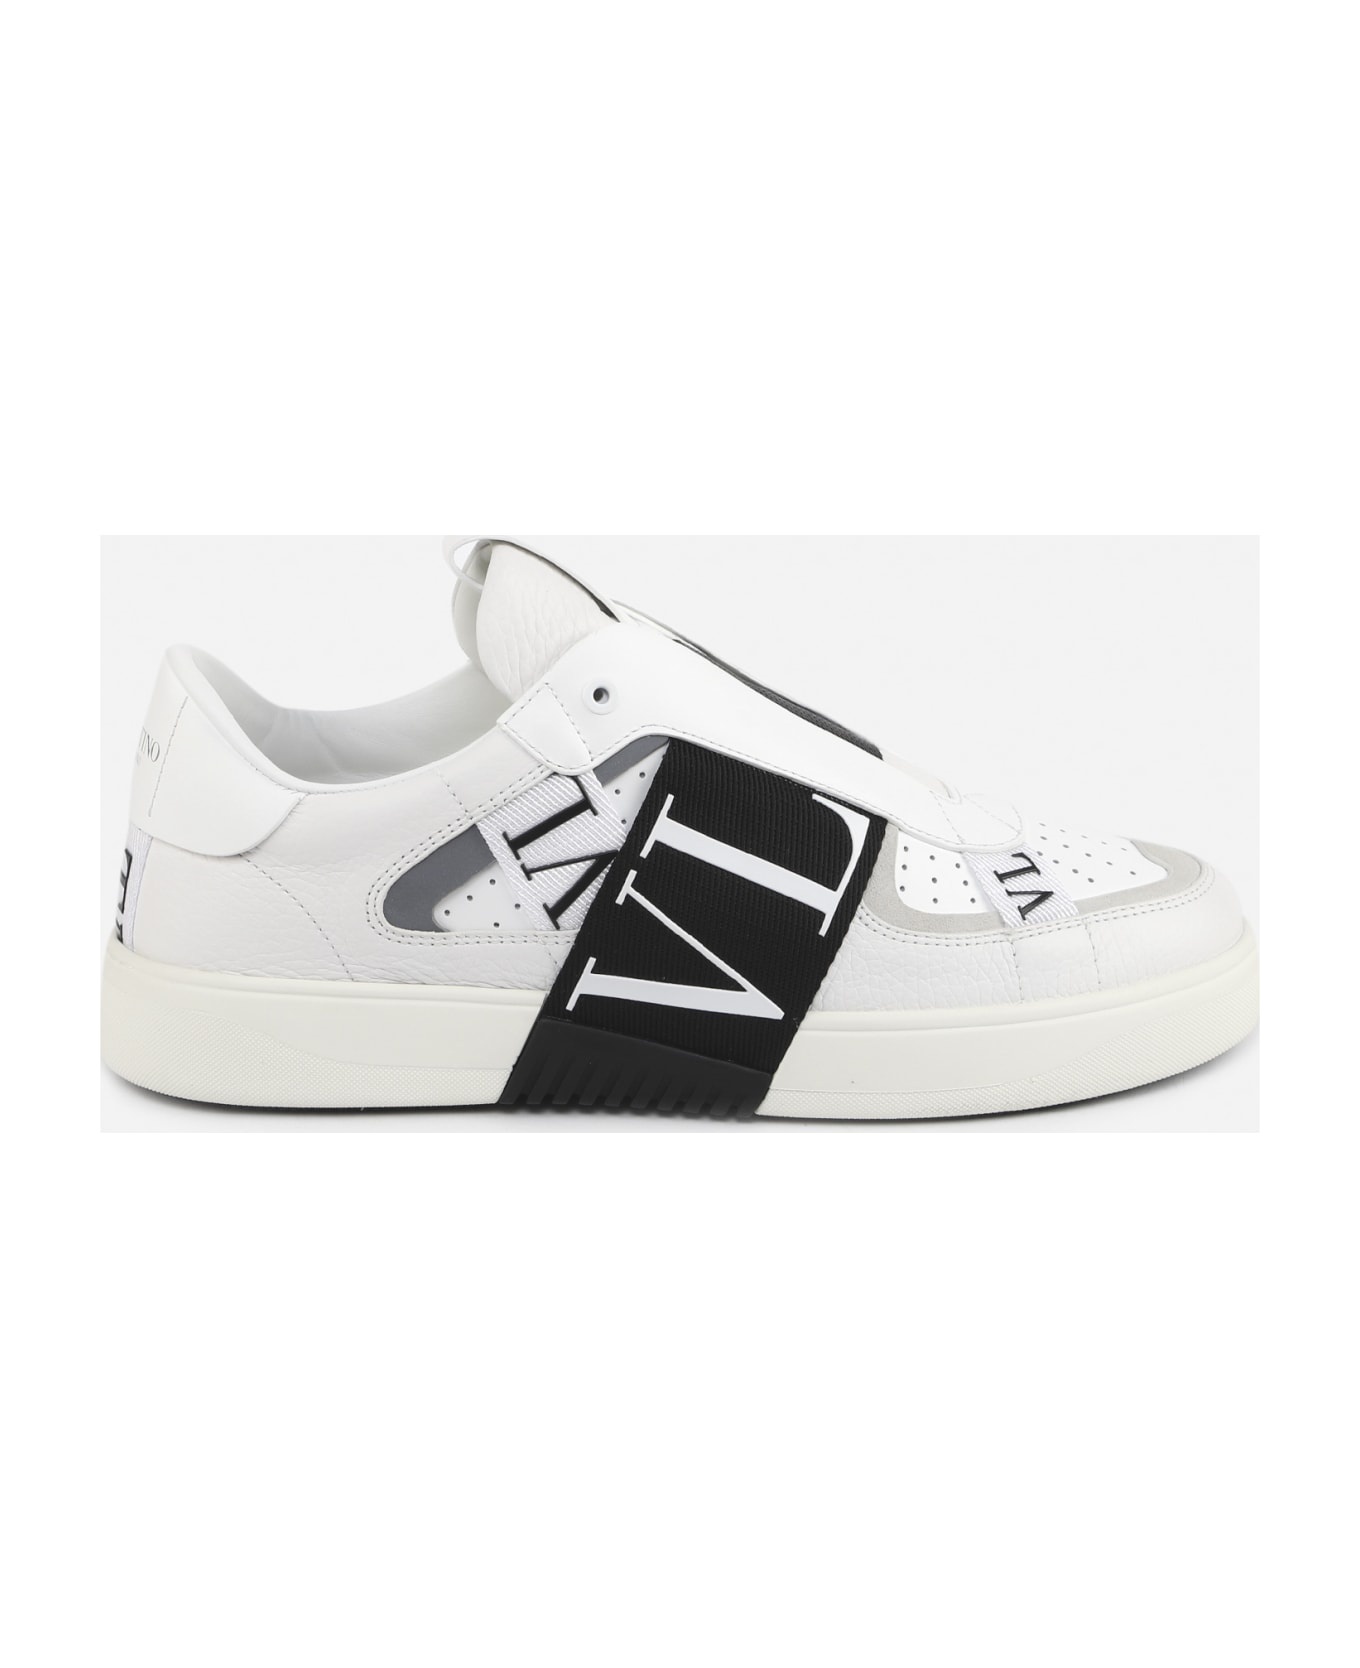 Vl7n Slip-on Sneakers In Leather - 1